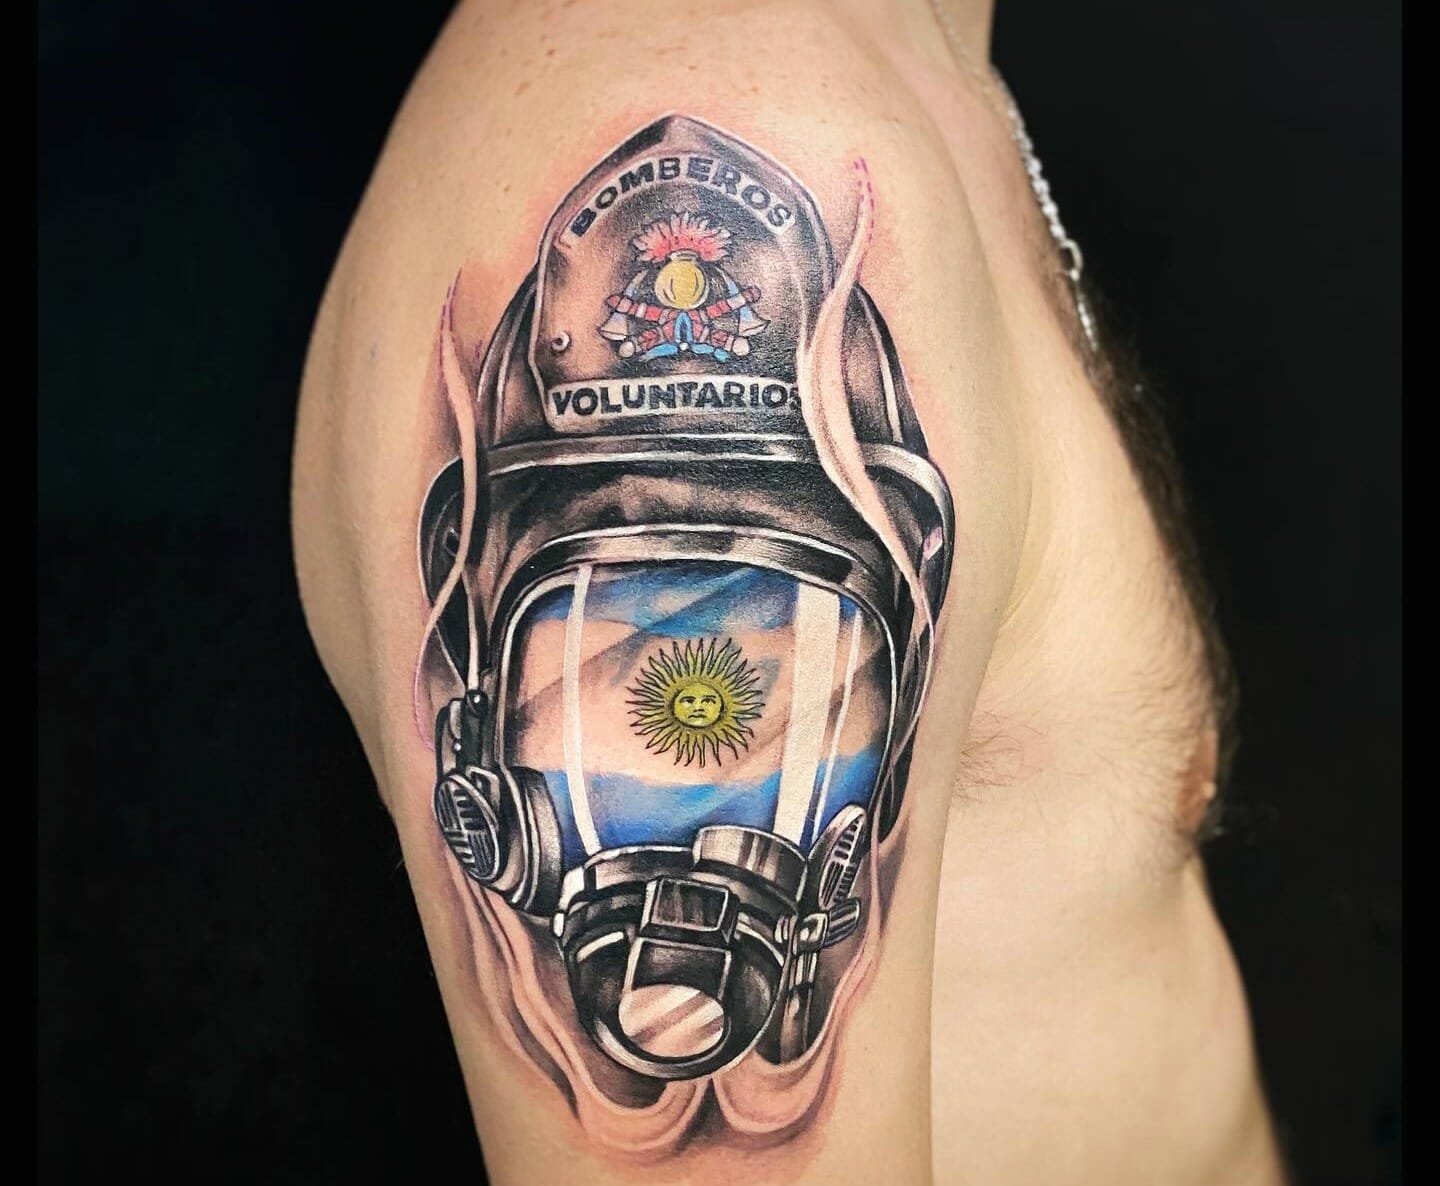 50 Firefighter Tattoos For Men  Masculine Fireman Ideas